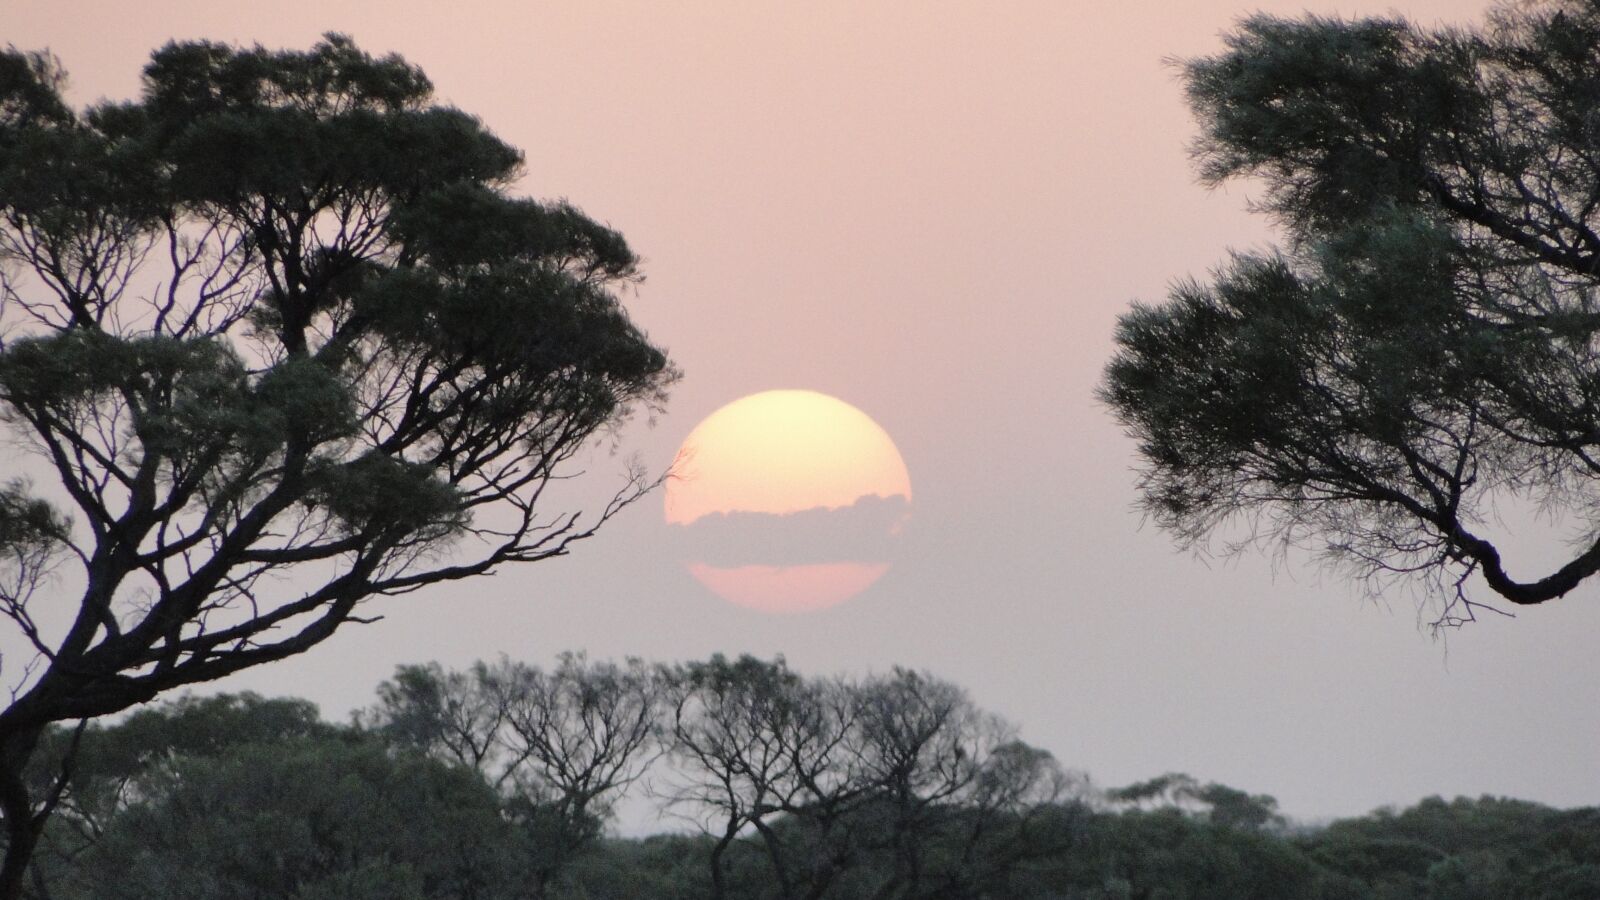 Sony Cyber-shot DSC-HX1 sample photo. Australia, outback, sunset photography